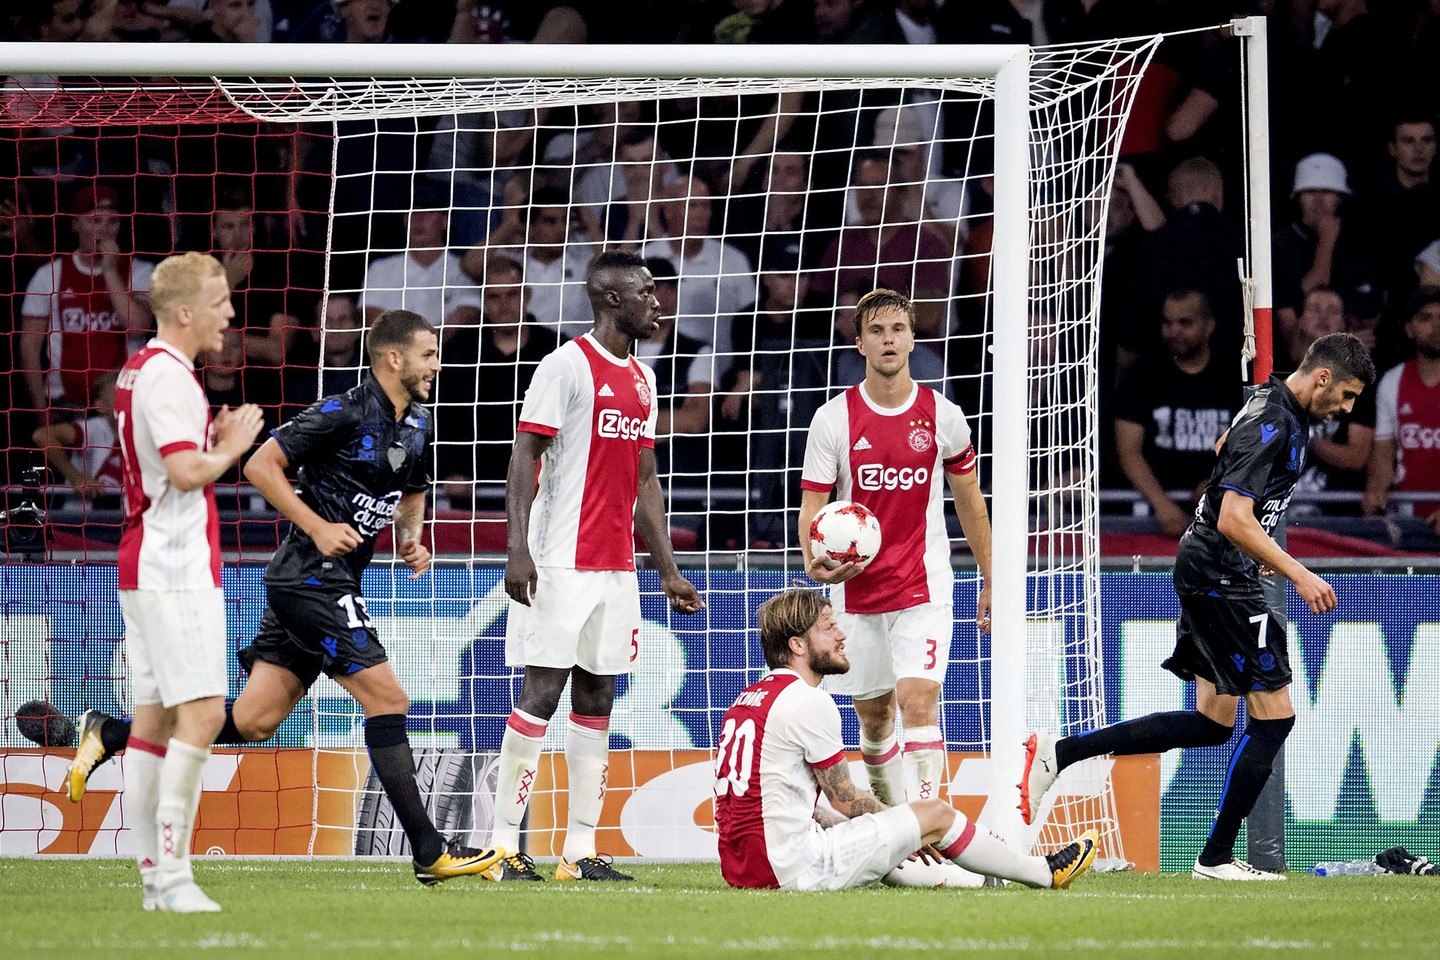  Nesėkmę patyrusiems "Ajax" futbolininkams teks varžytis Europos lygos atrankoje<br> AFP/Scanpix nuotr.